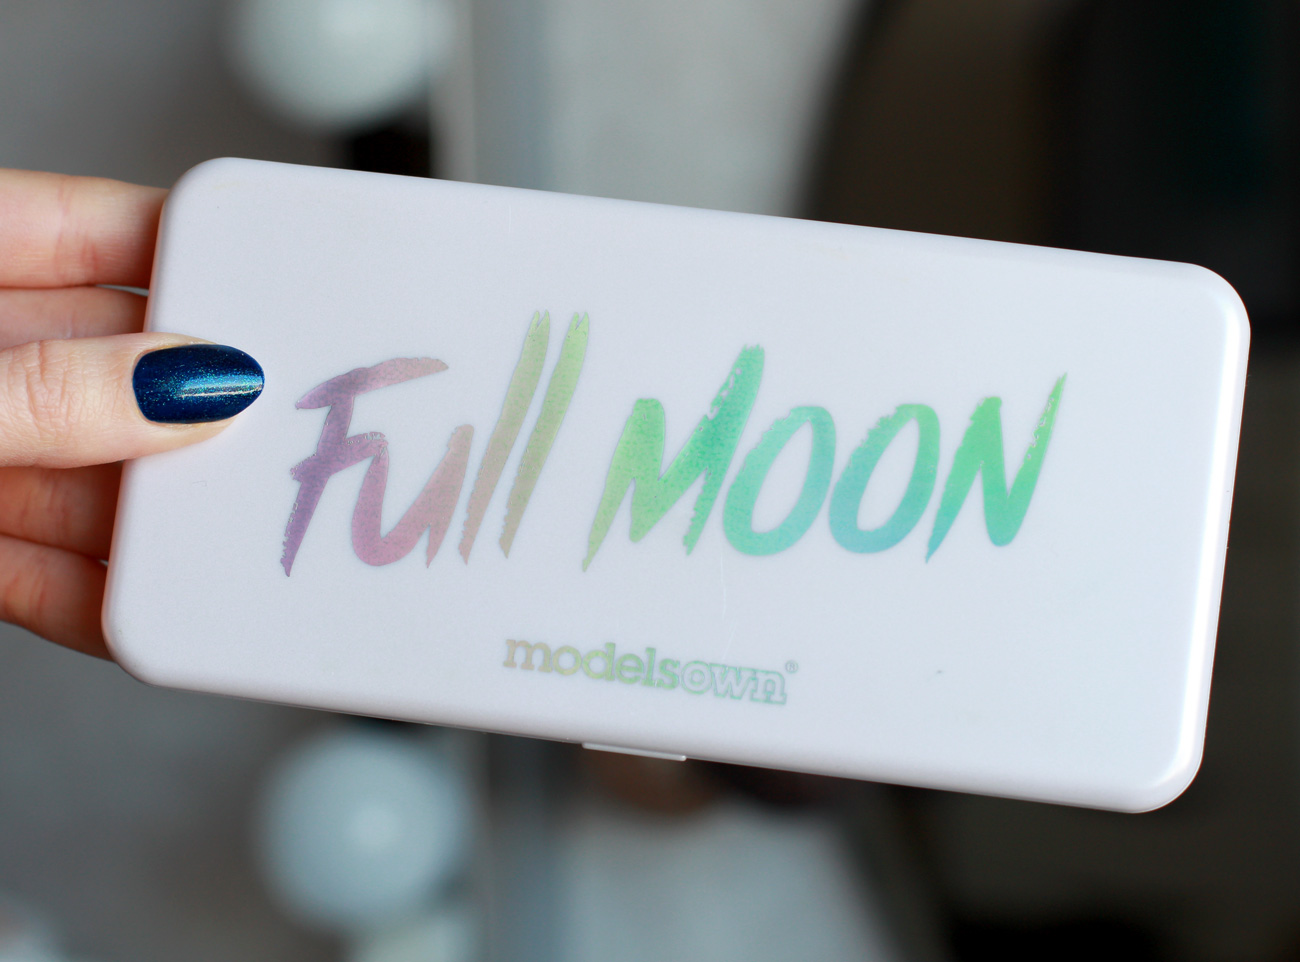 Models Own Full Moon Eyeshadow Palette